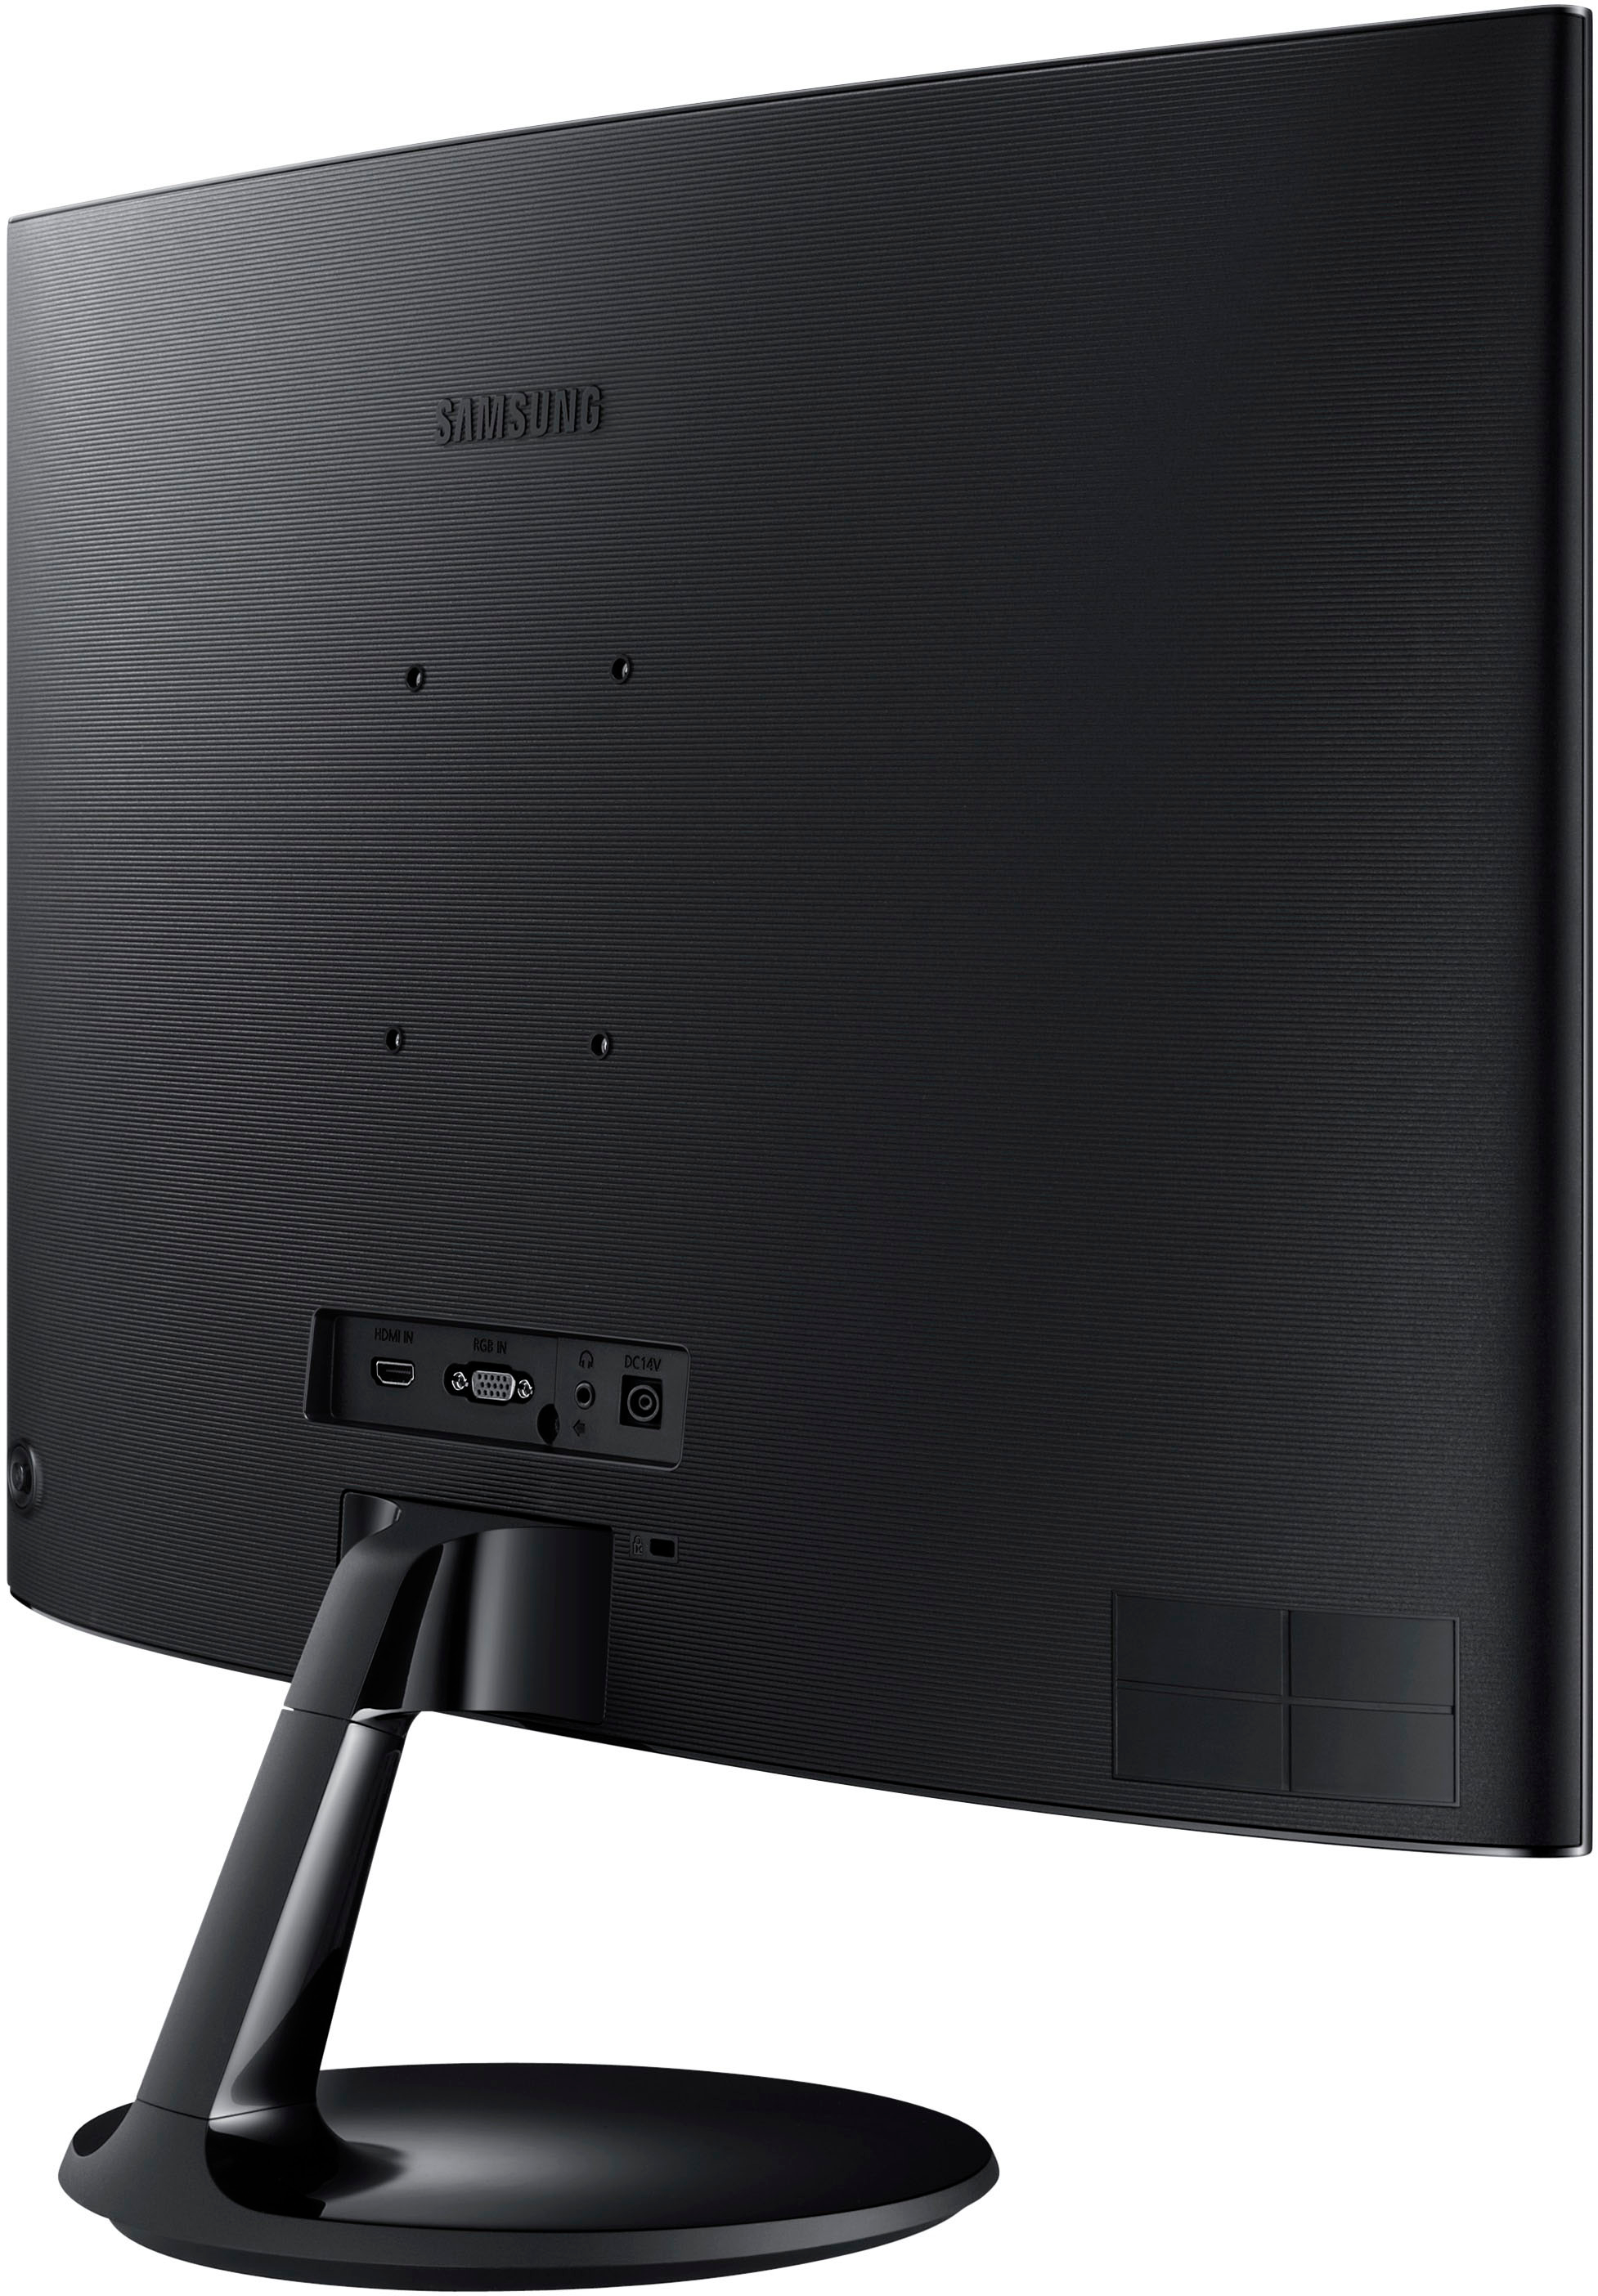 Samsung 390C 24" LED FHD AMD Monitor (HDMI, VGA) Black - Best Buy